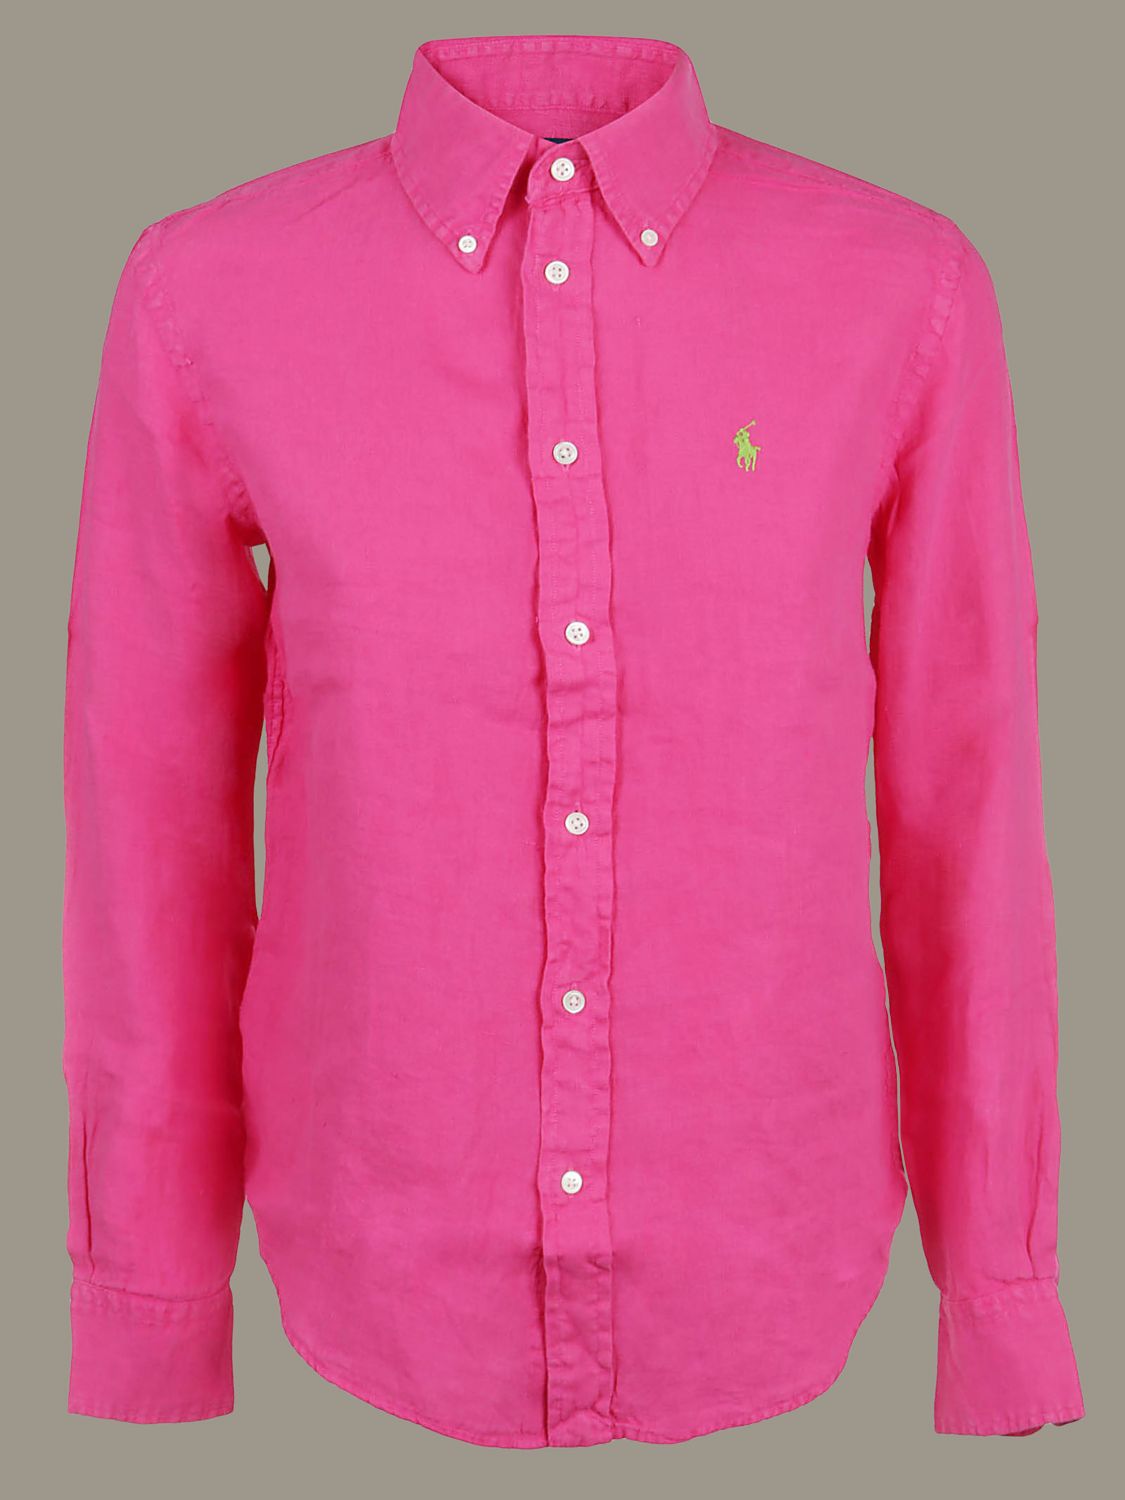 ralph lauren pink shirt womens